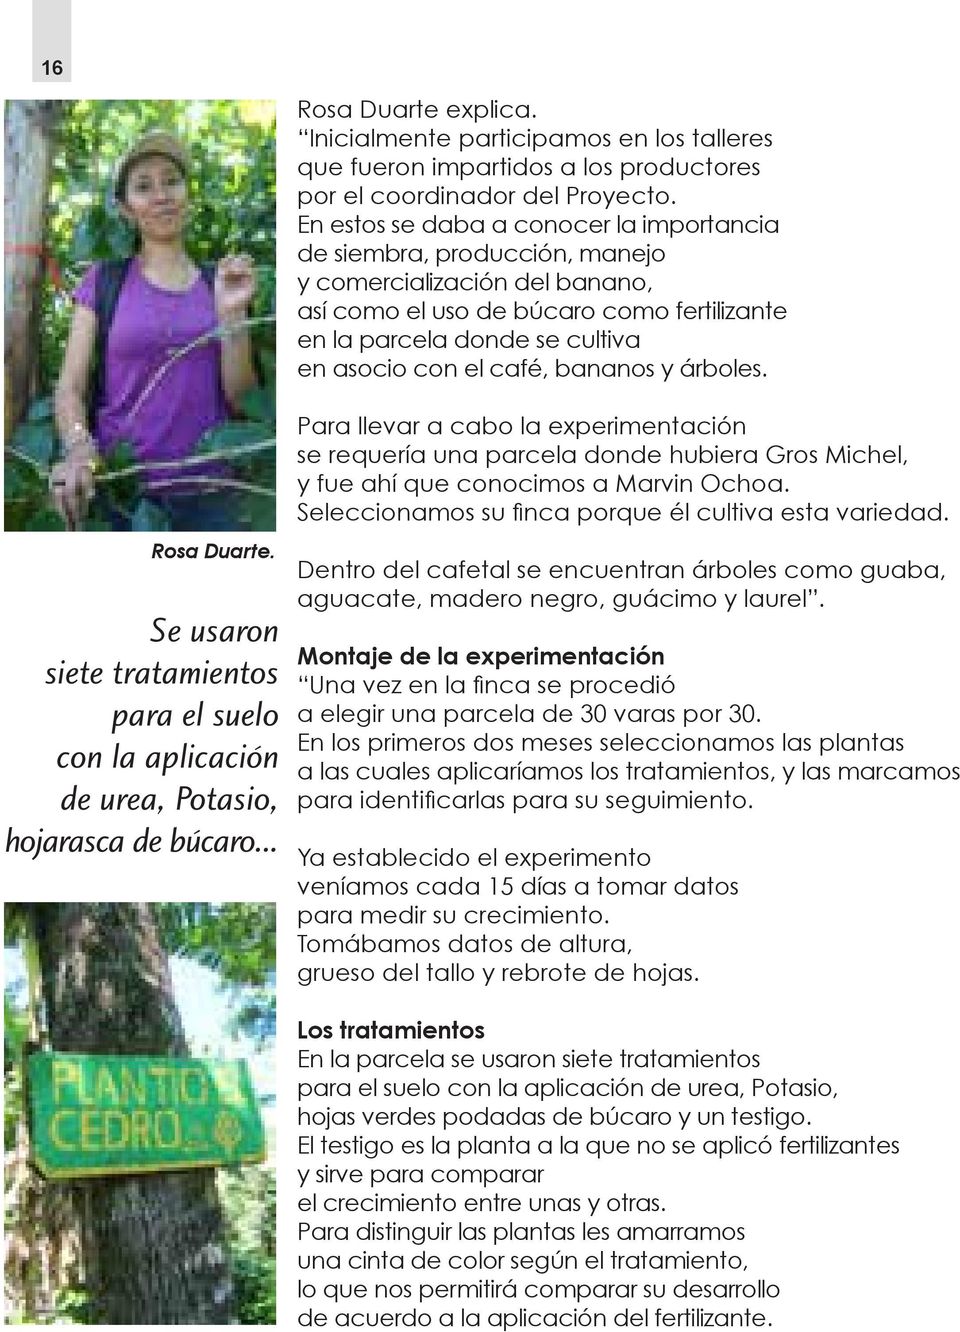 café, bananos y árboles. Rosa Duarte. Se usaron siete tratamientos para el suelo con la aplicación de urea, Potasio, hojarasca de búcaro.